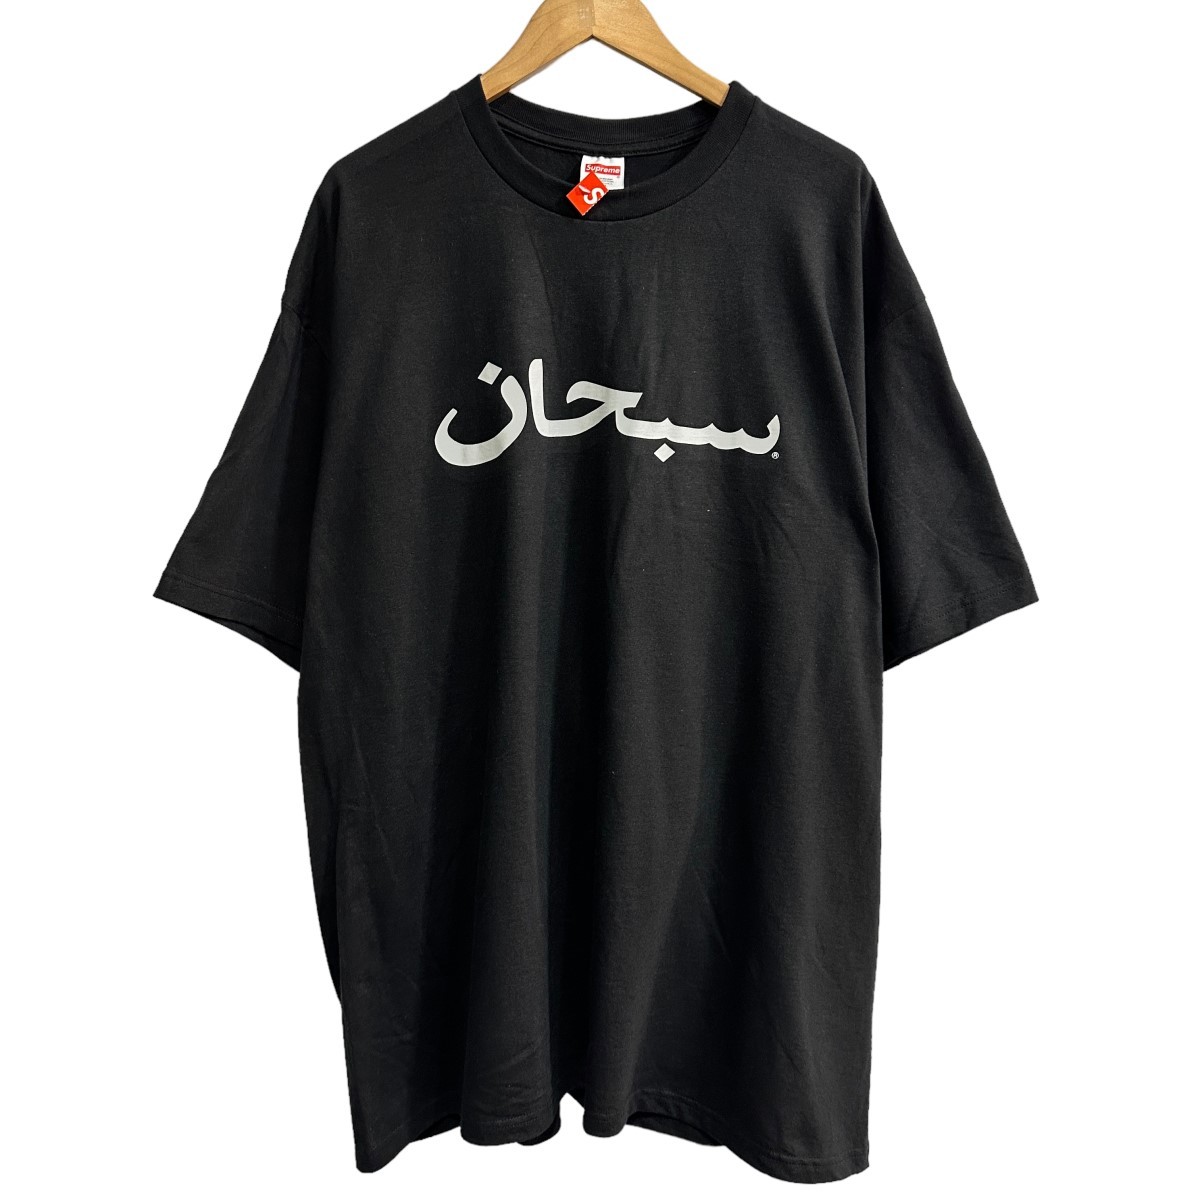 ヤフオク! -「supreme」(XLサイズ以上) (半袖Tシャツ)の落札相場・落札価格